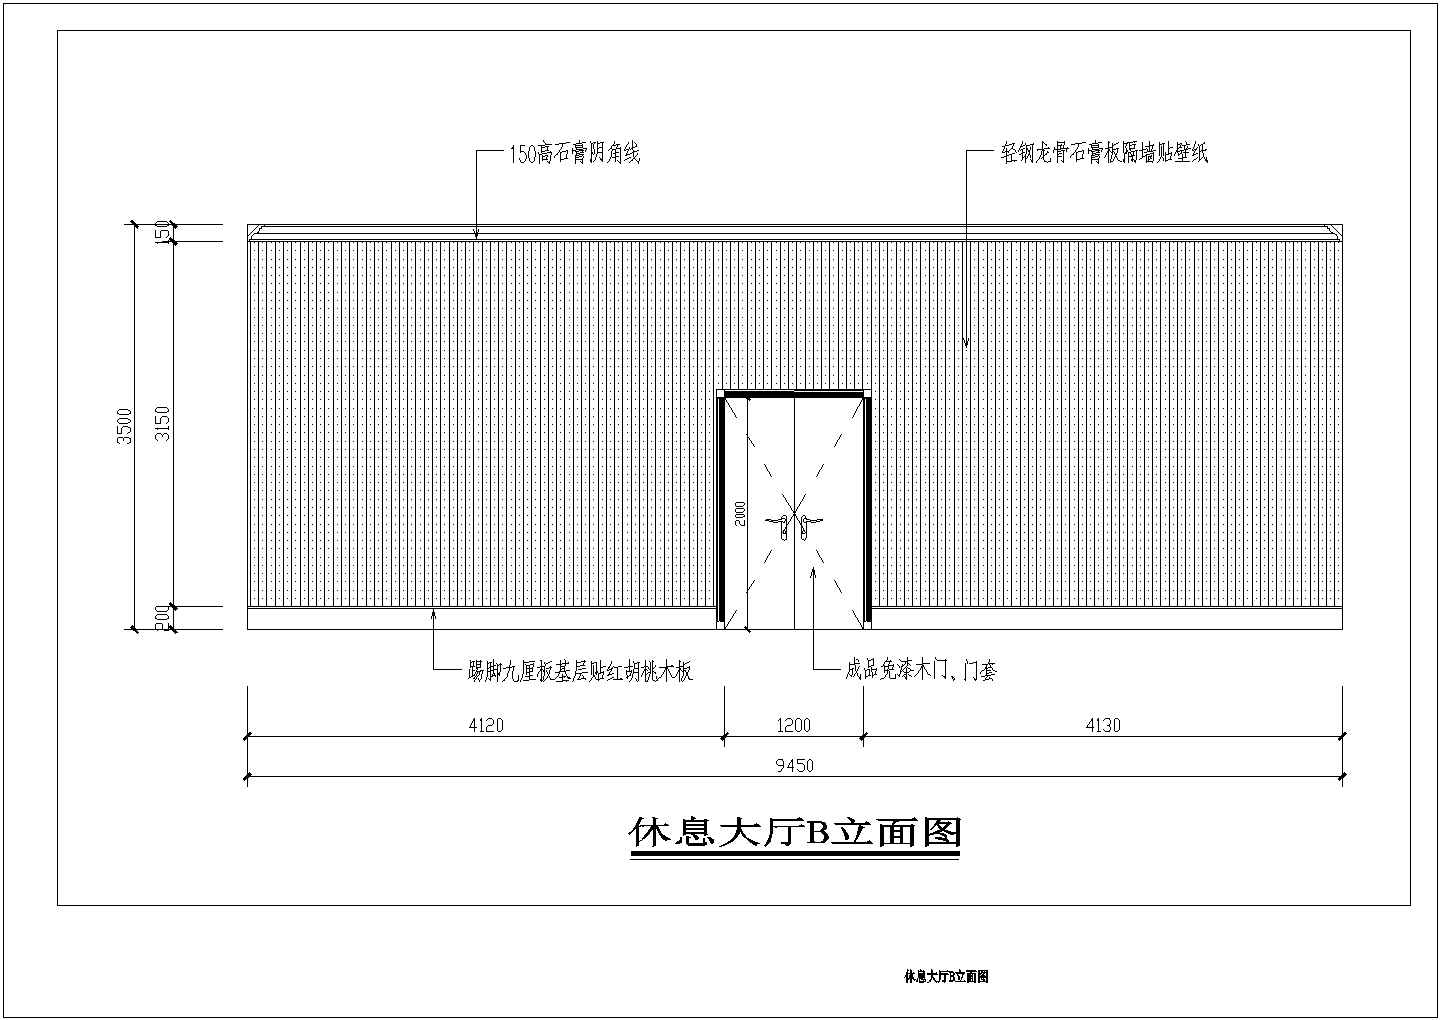 某扬州三把刀桑拿洗浴中心全套装修设计cad图纸(含给水、热水管道系统图)